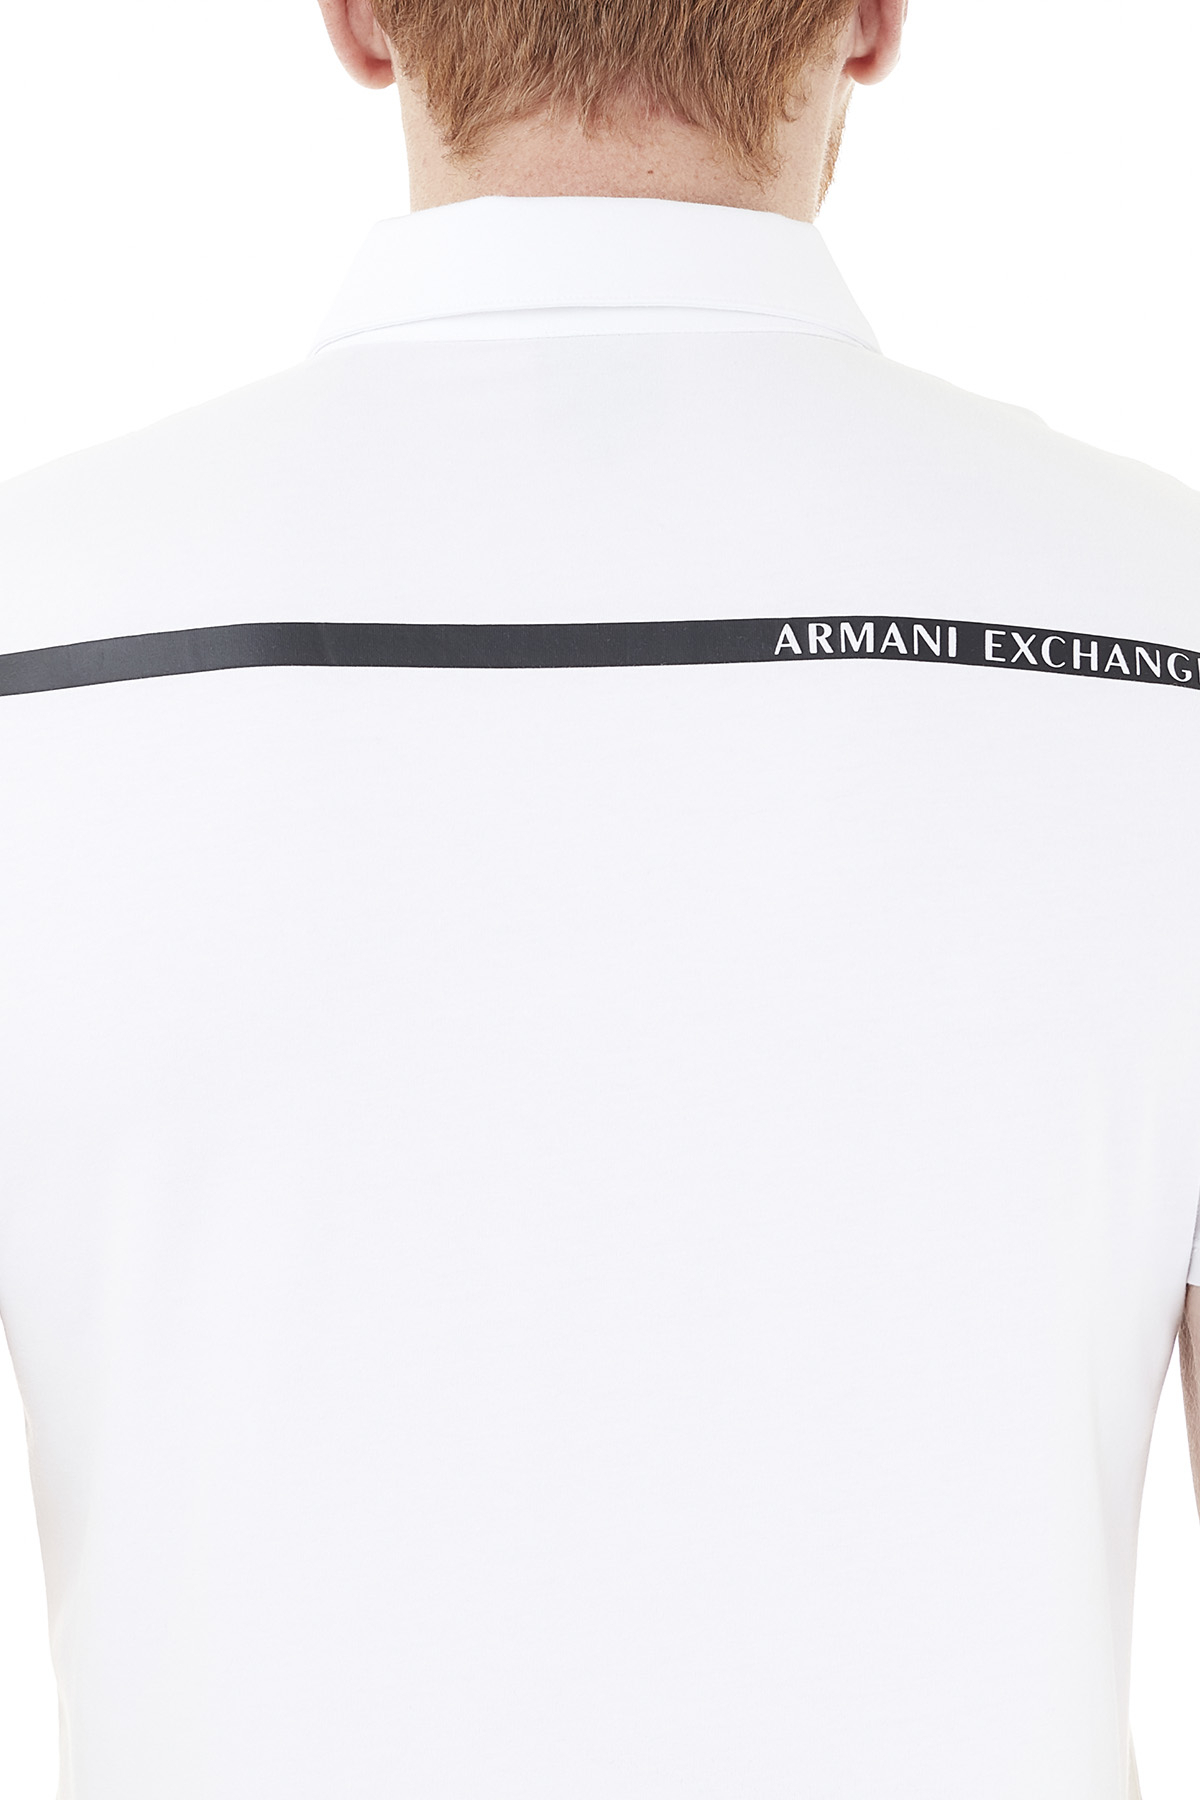 Armani Exchange Pamuklu T Shirt Erkek Polo 3KZFHA ZJE6Z 1100 BEYAZ